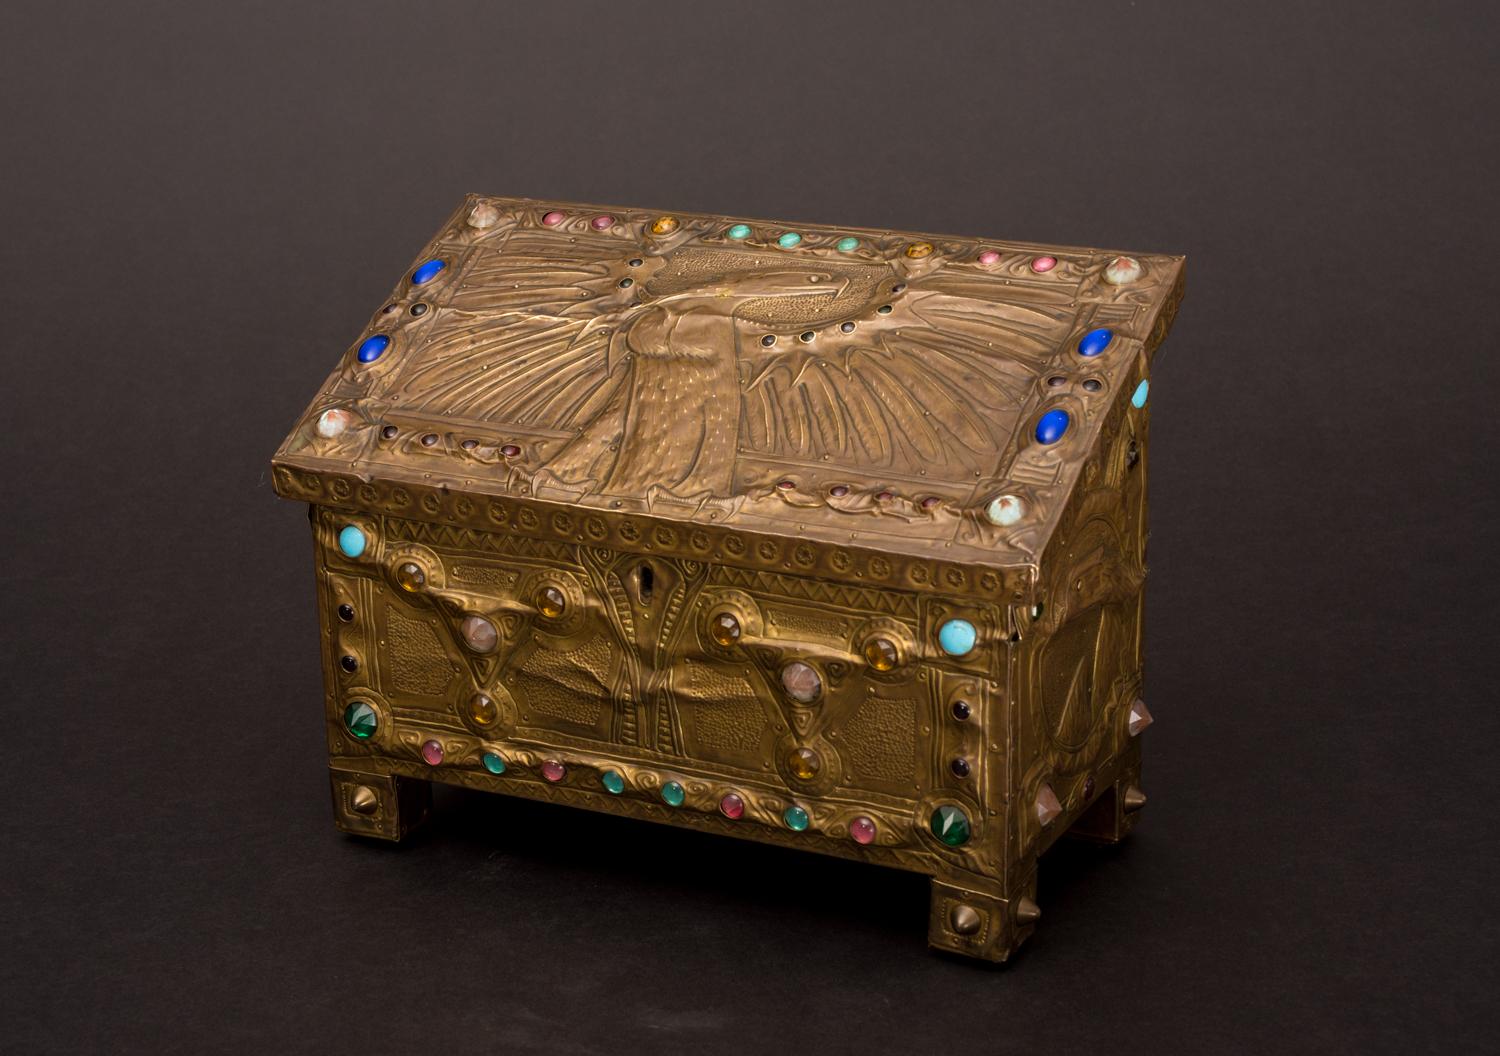 Golden Eagle Box - Art Nouveau Art by Alfred Daguet Atelier